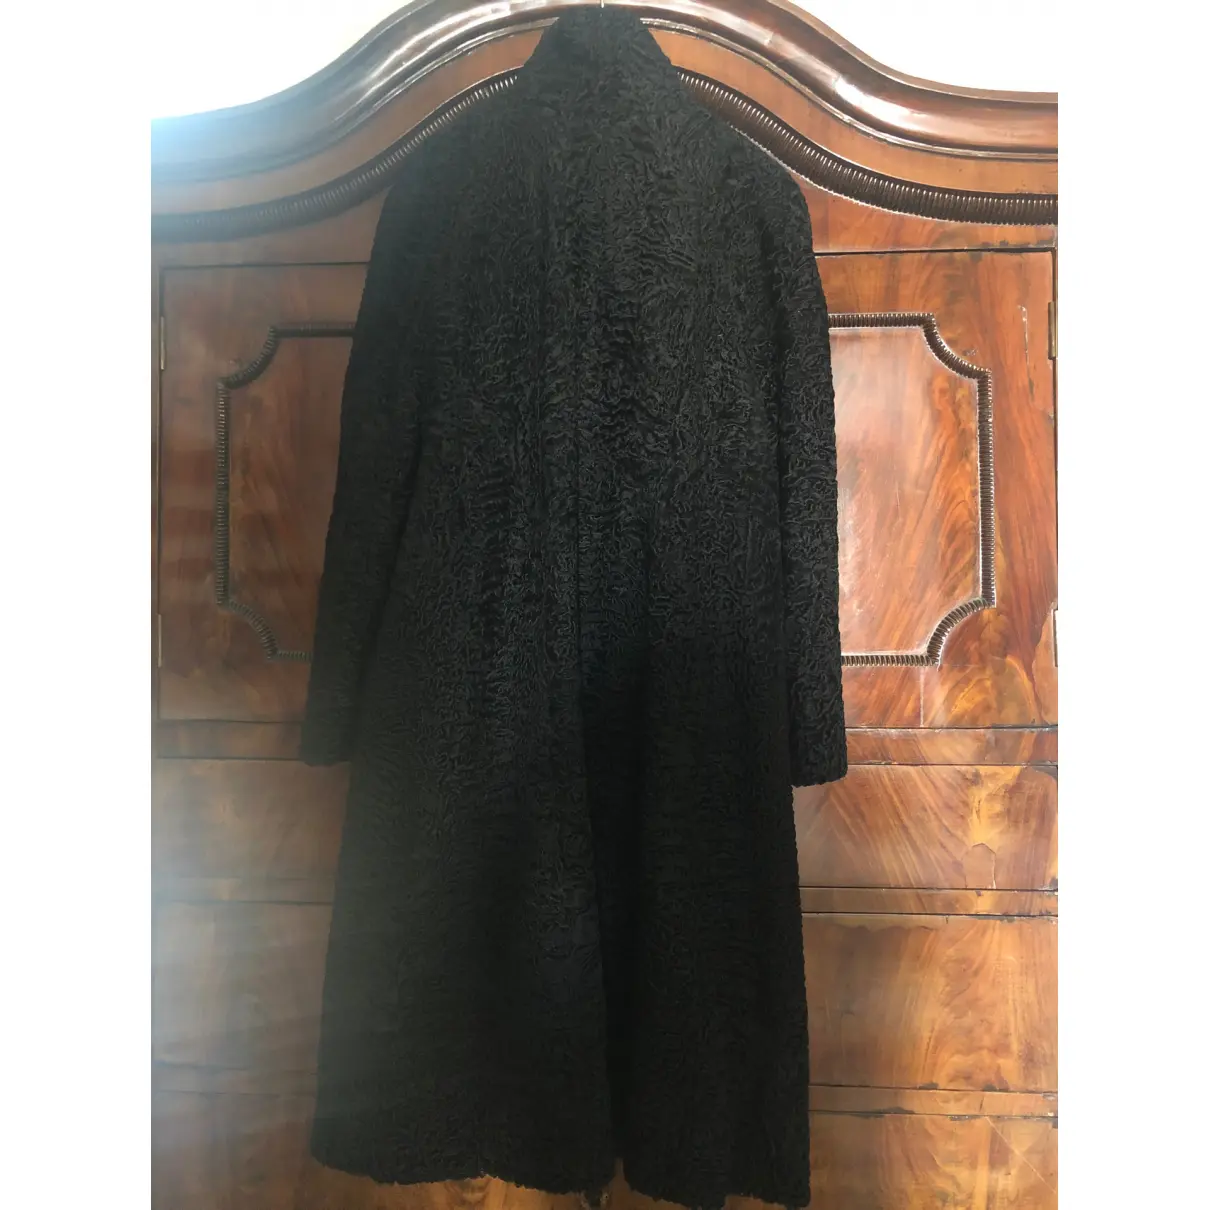 Buy SARTORIA ITALIANA Astrakhan coat online